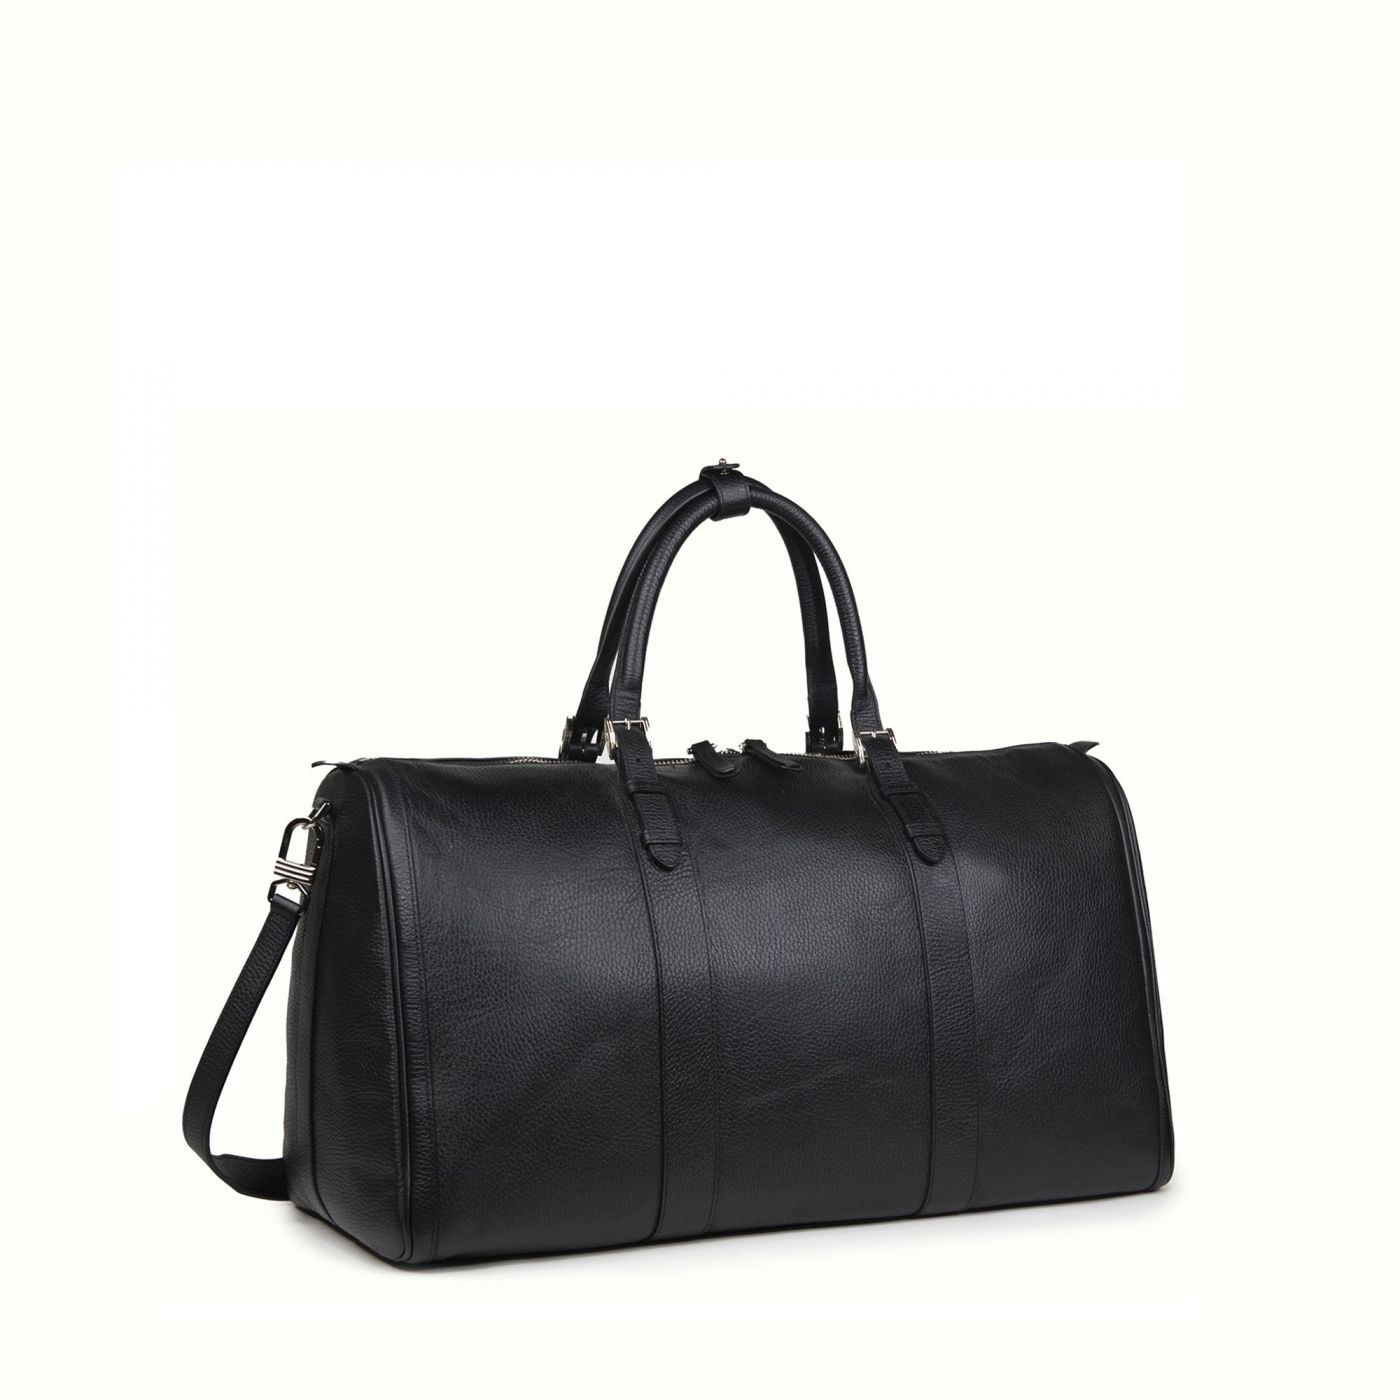 Black Duffel Bag